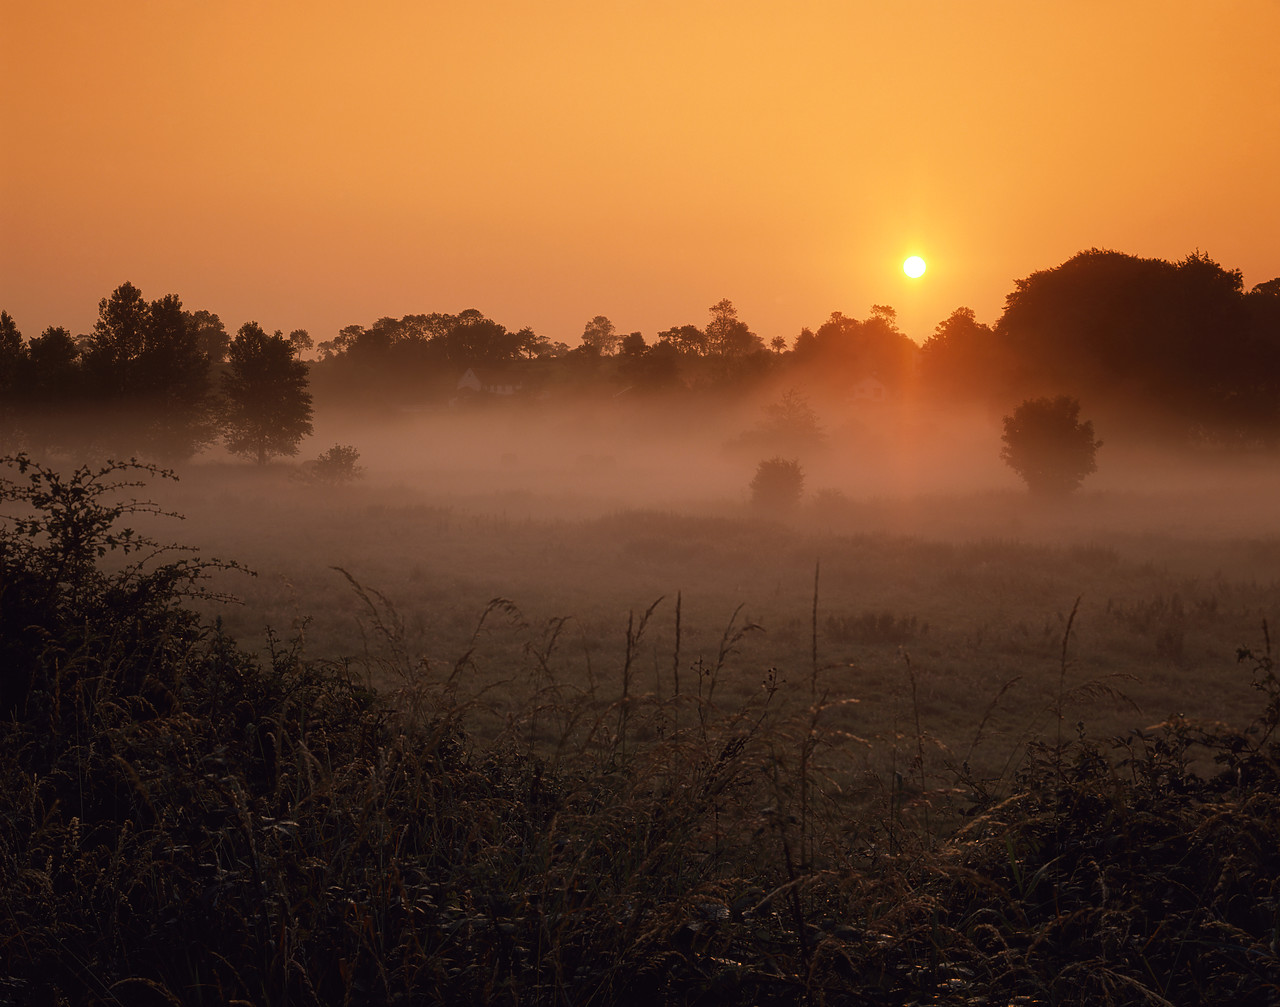 #934347-1 - Sunrise over Fields in Mist, Stoke Holy Cross, Norfolk, England